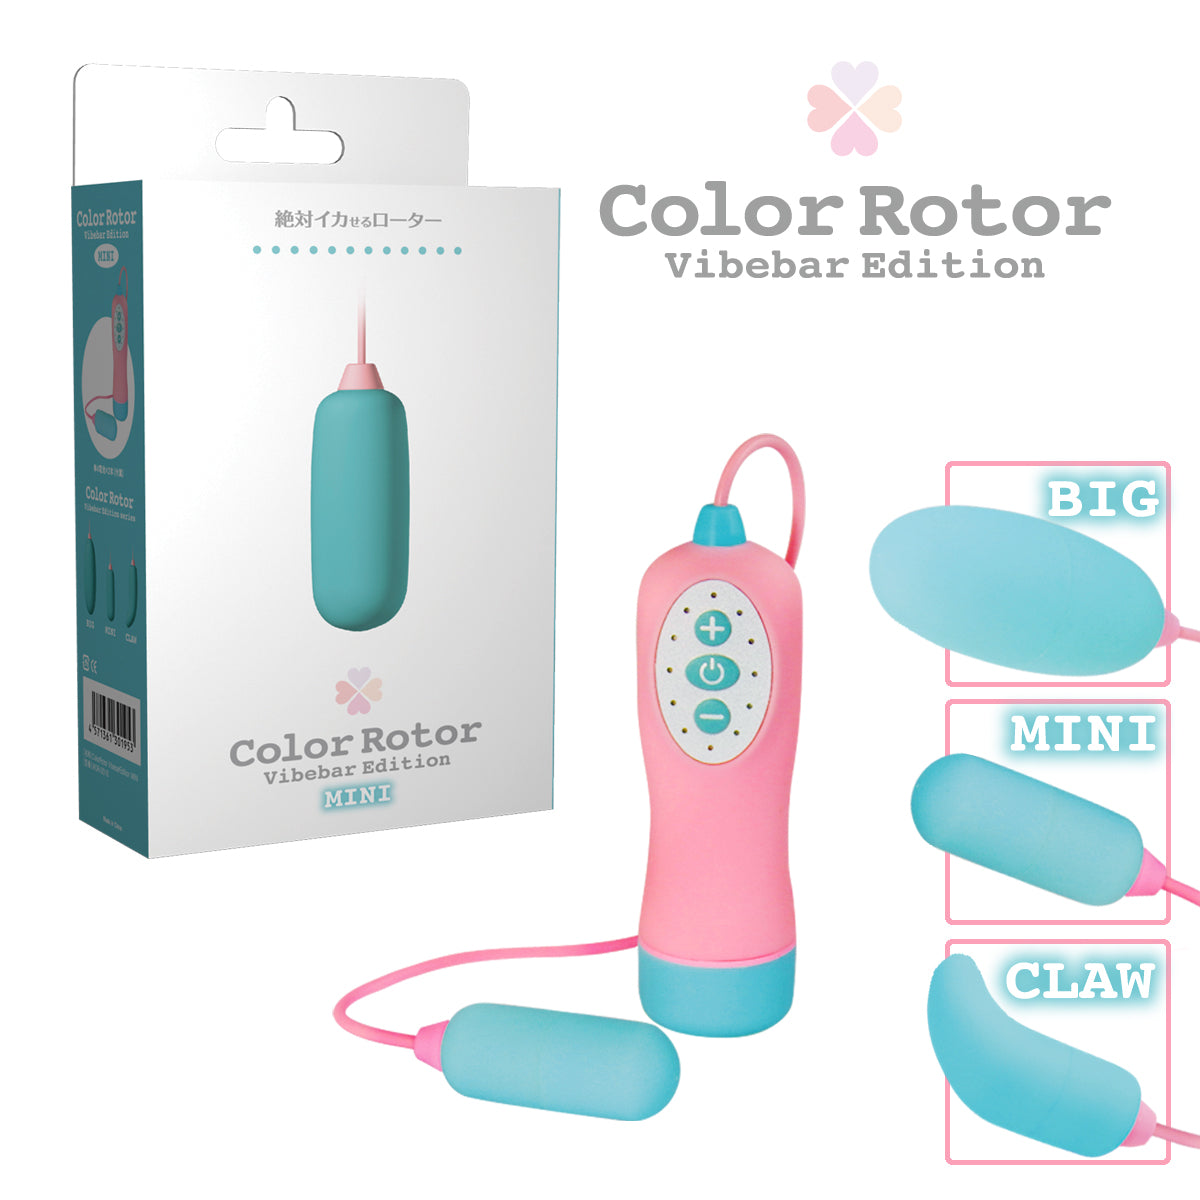 Color Rotor Vibebar Edition